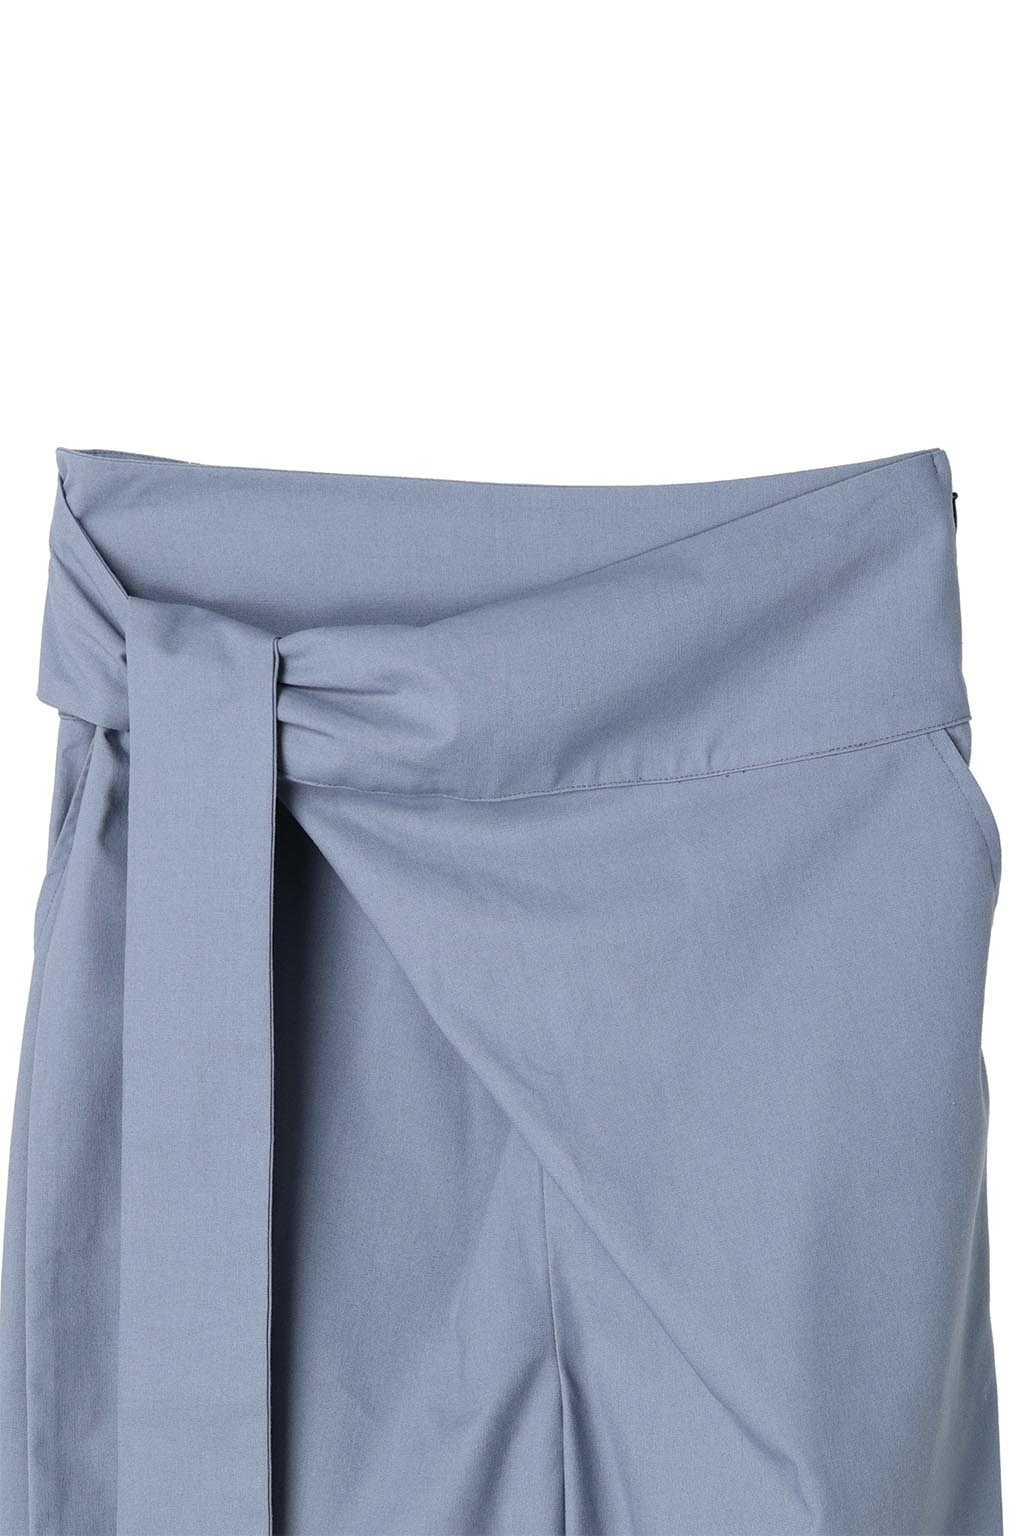 Wrap Wide Pants Blue 9